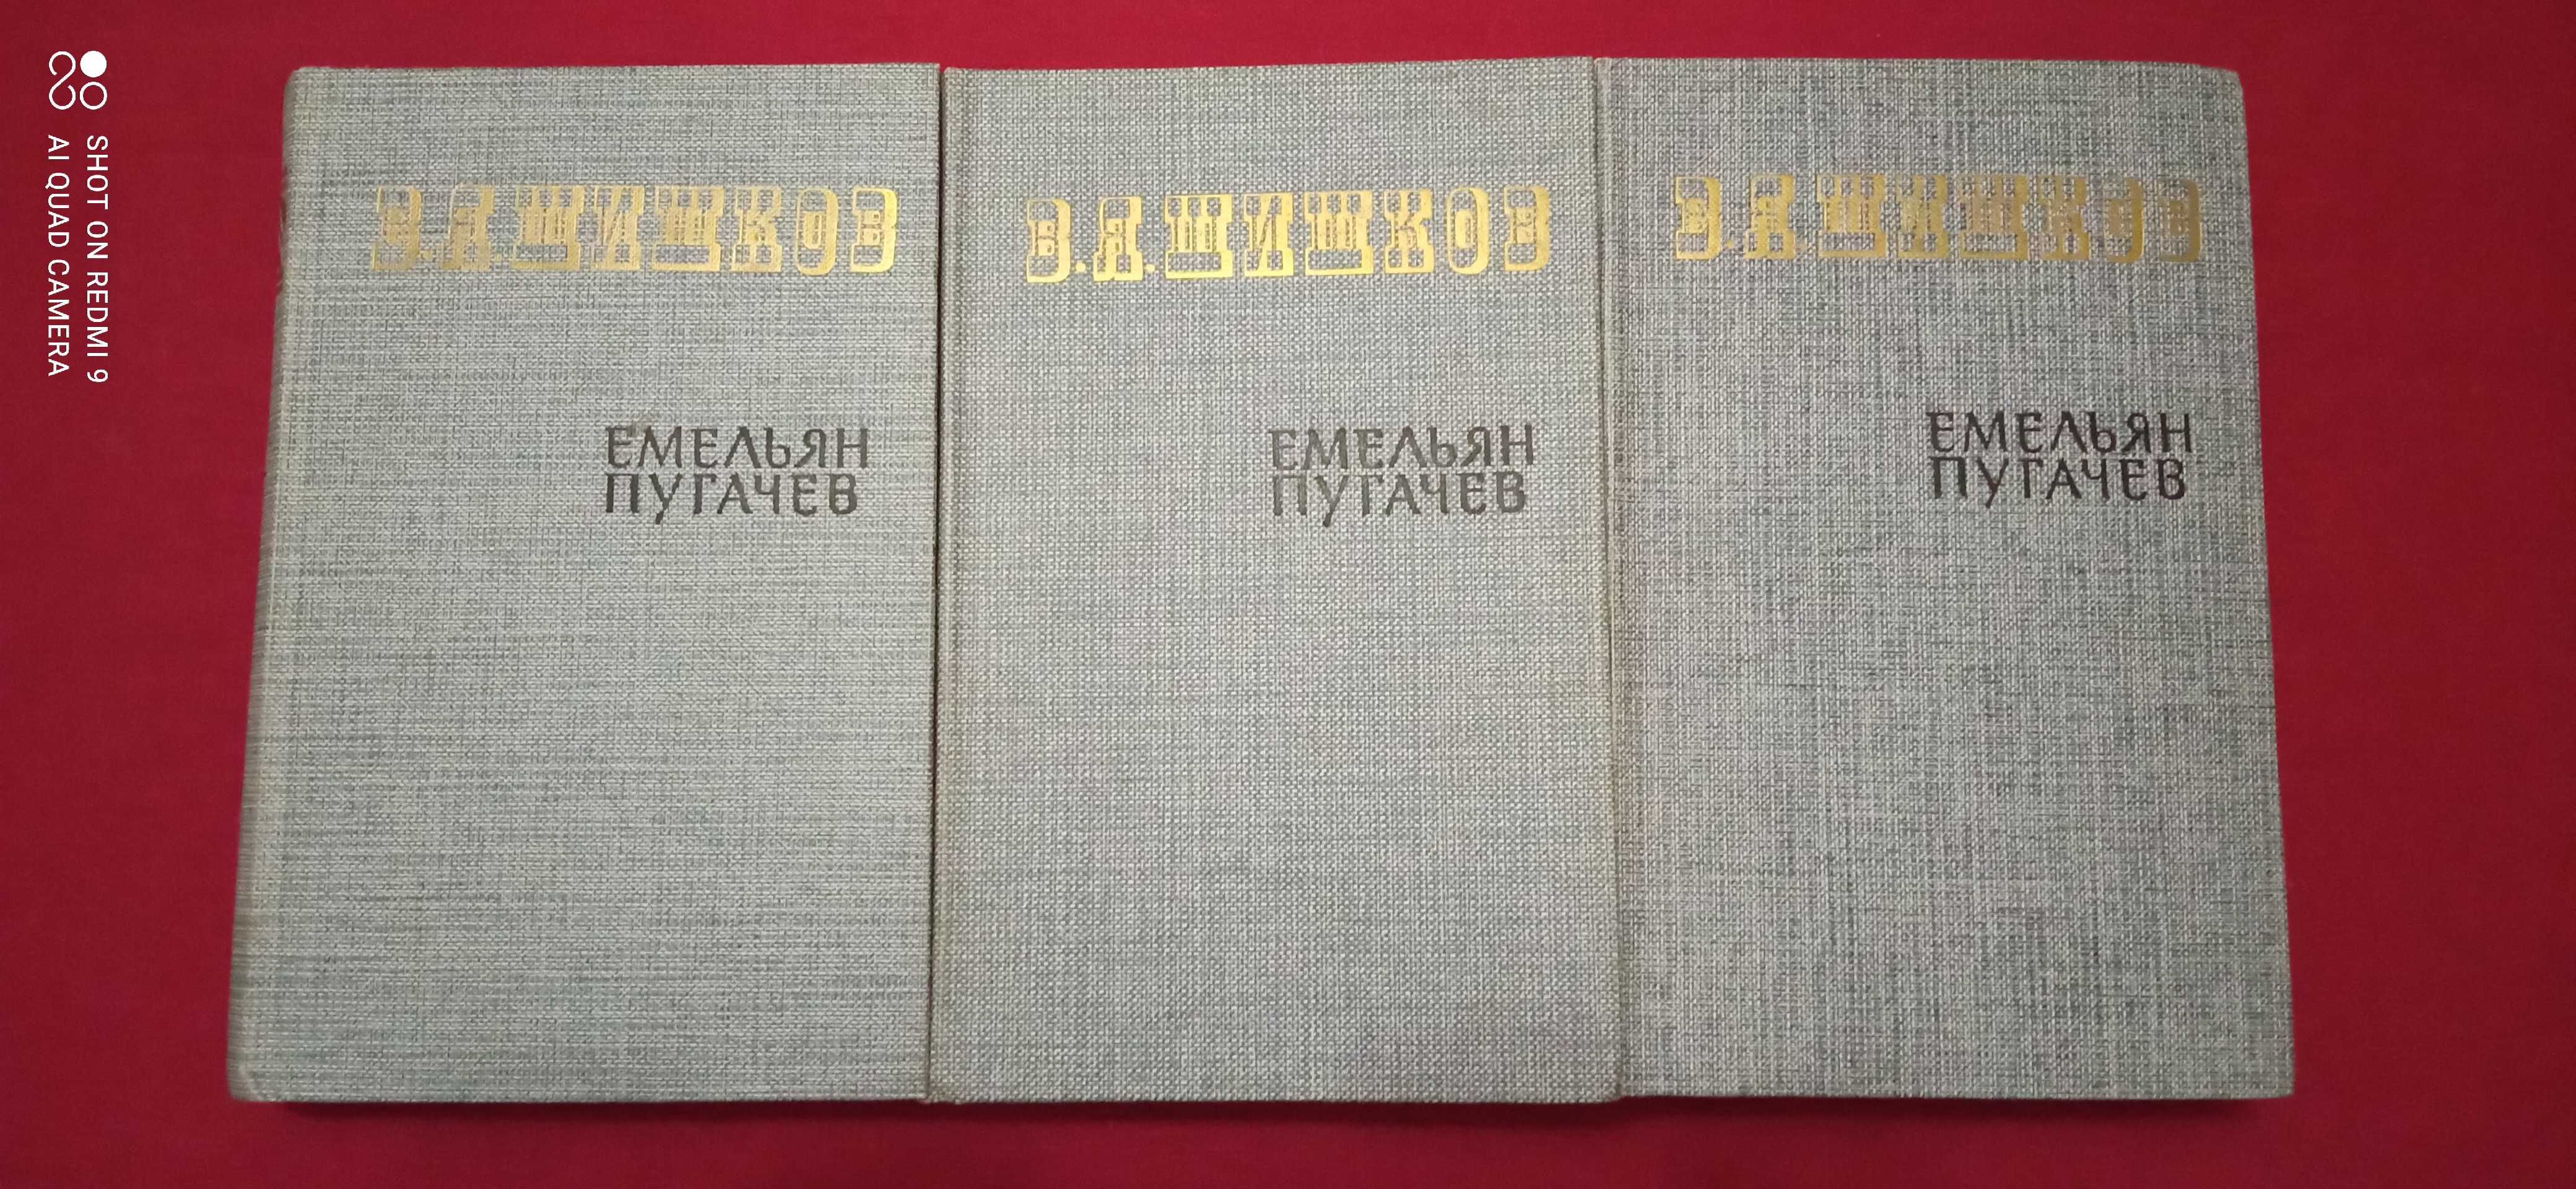 Книга: В.Я.Шишков "Емельян Пугачев", два комплекта.